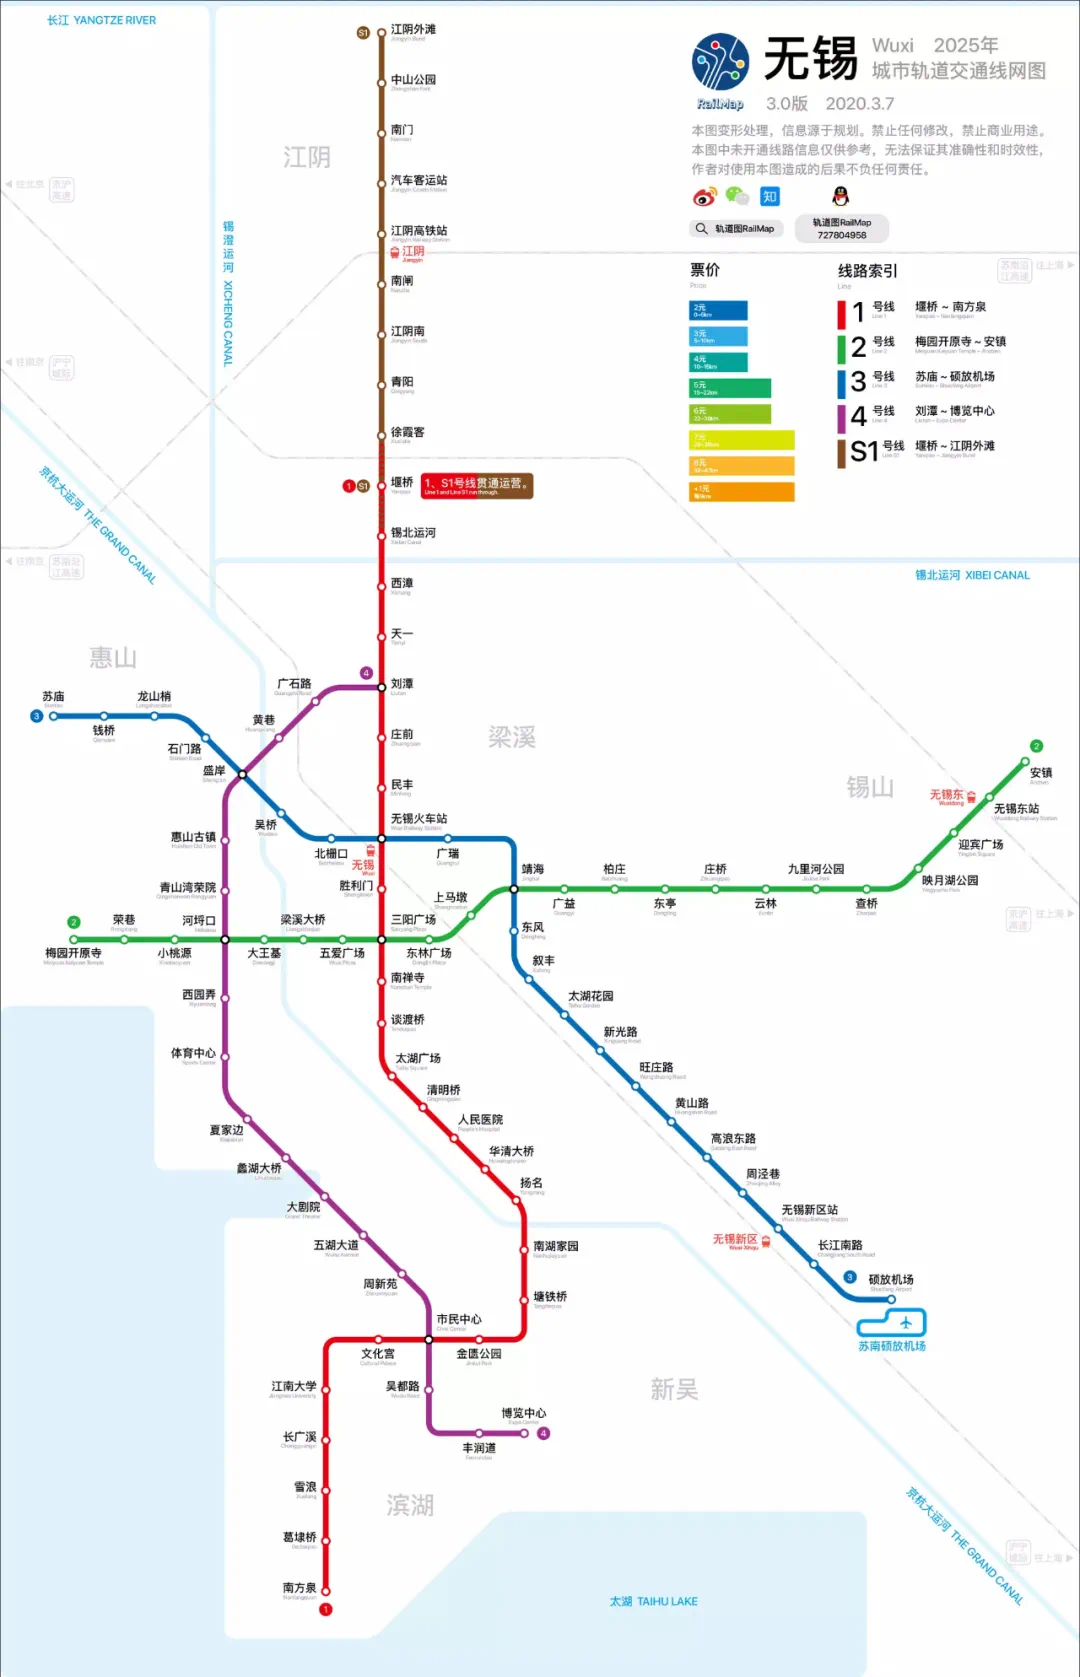 目前惠山区已有的 地铁一号线和已经正式开通运营的 地铁三号线,以及